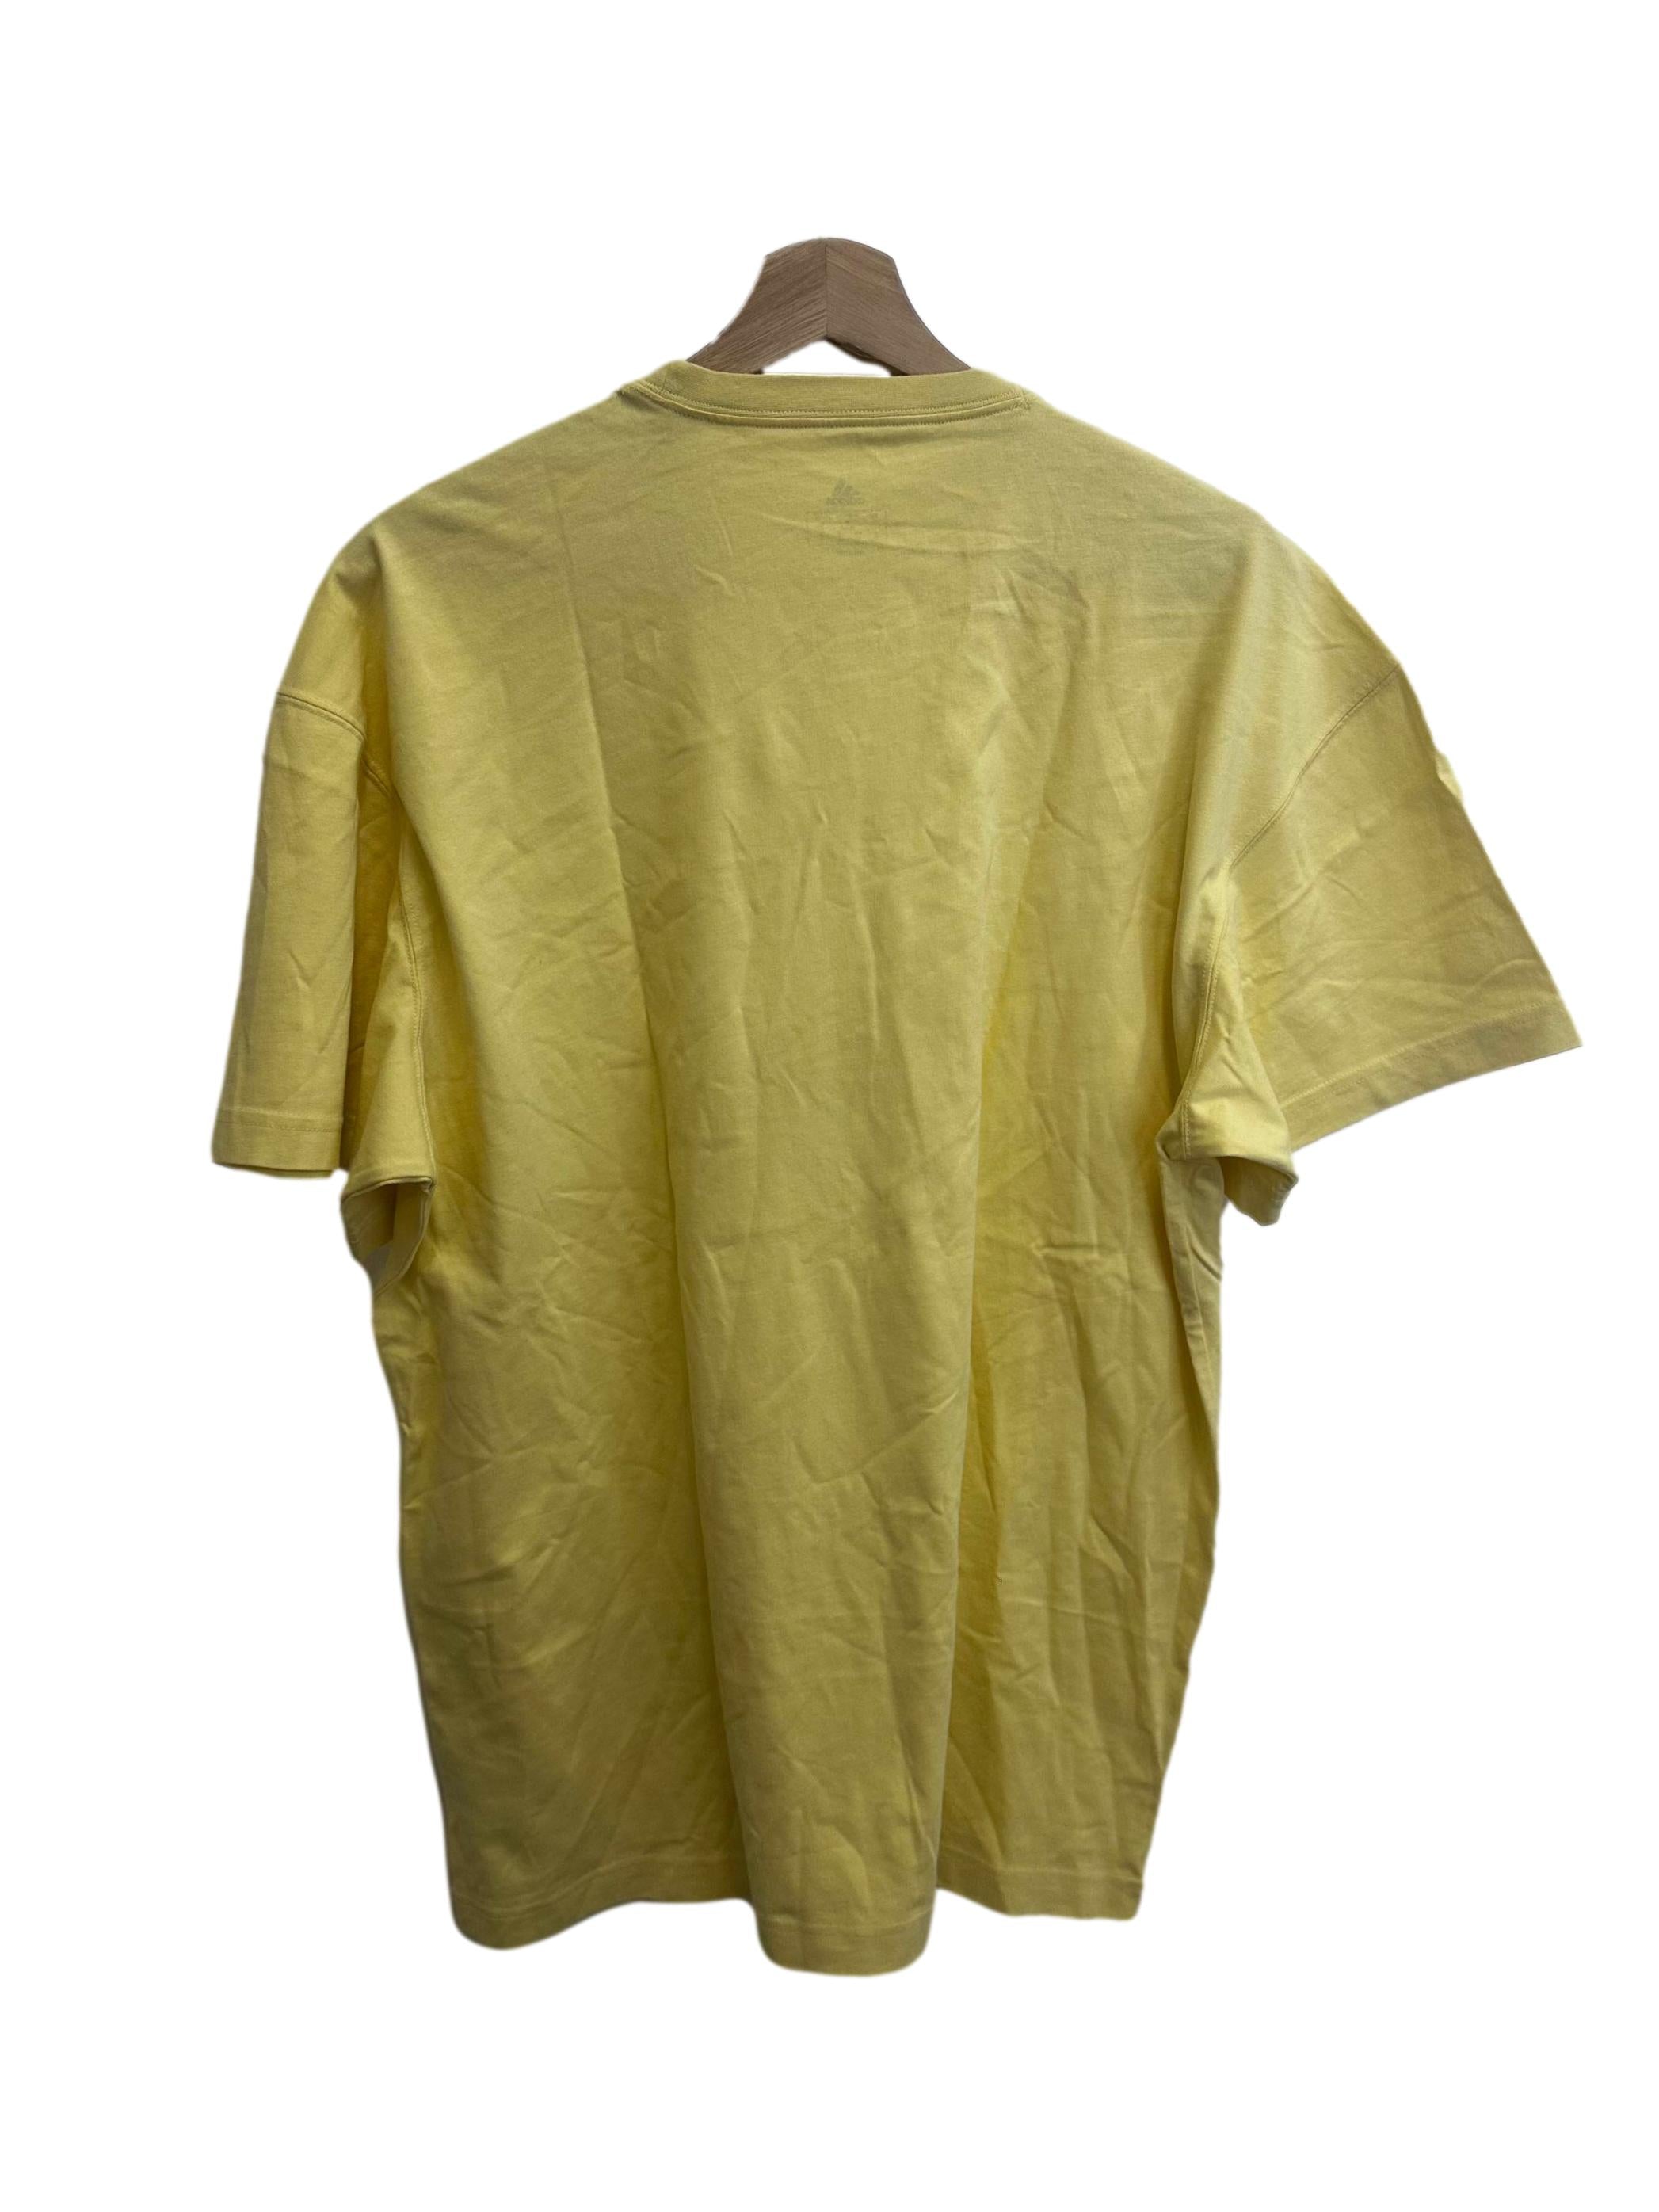 Banana Yellow Adidas T-Shirt